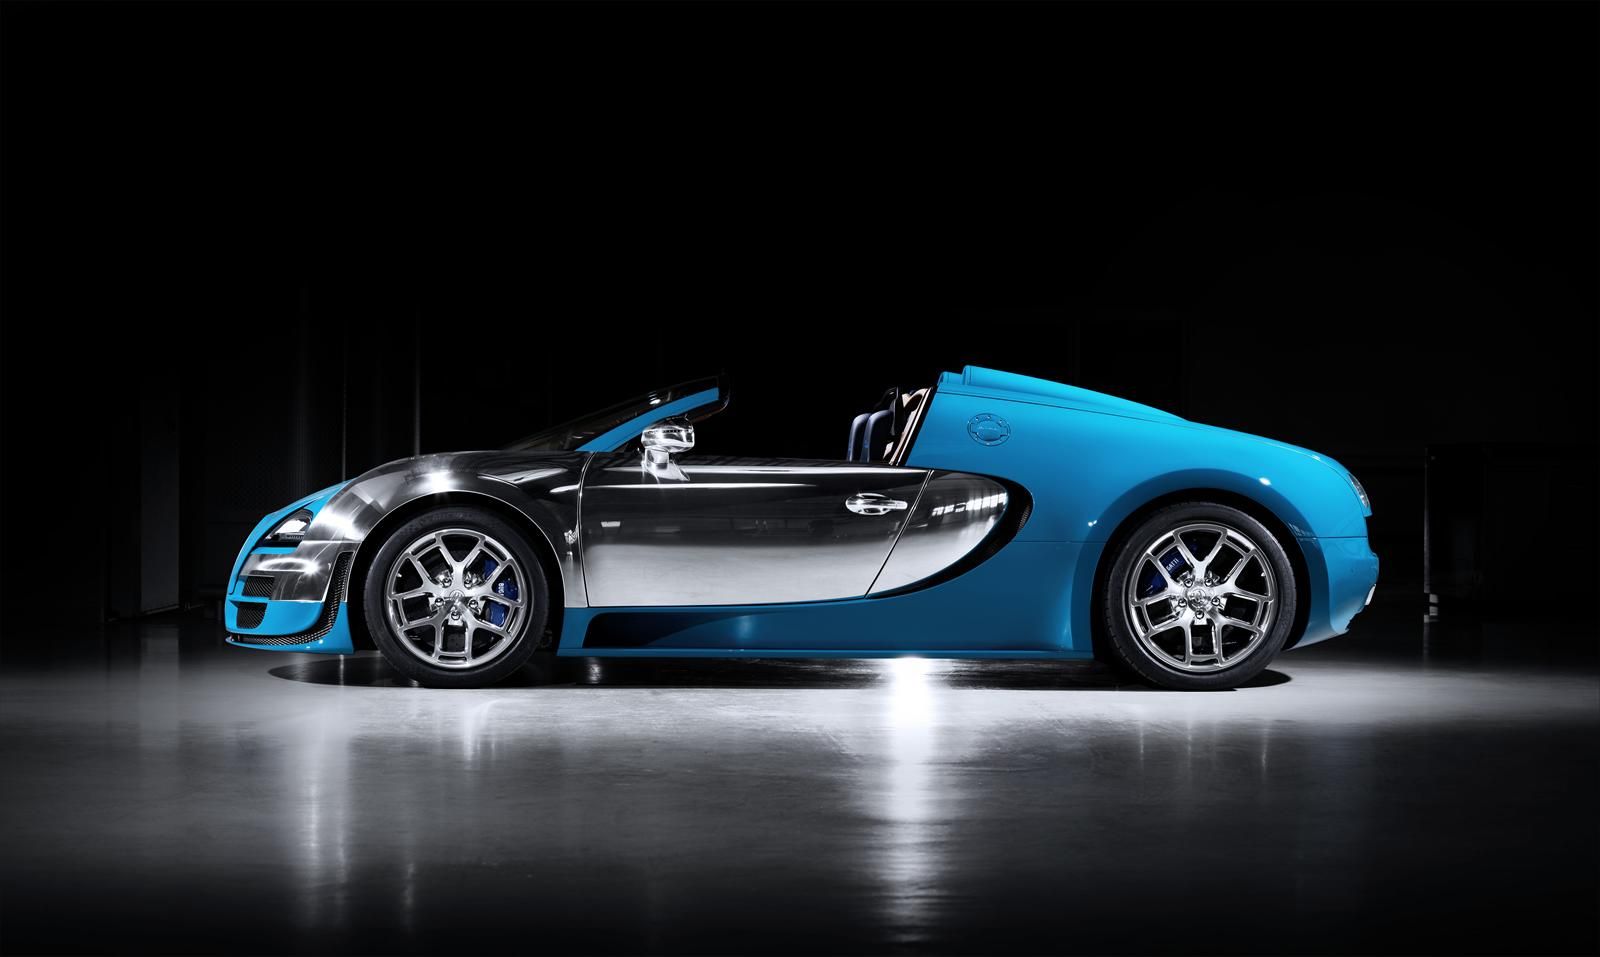 2013 Bugatti Veyron Grand Sport Vitesse 